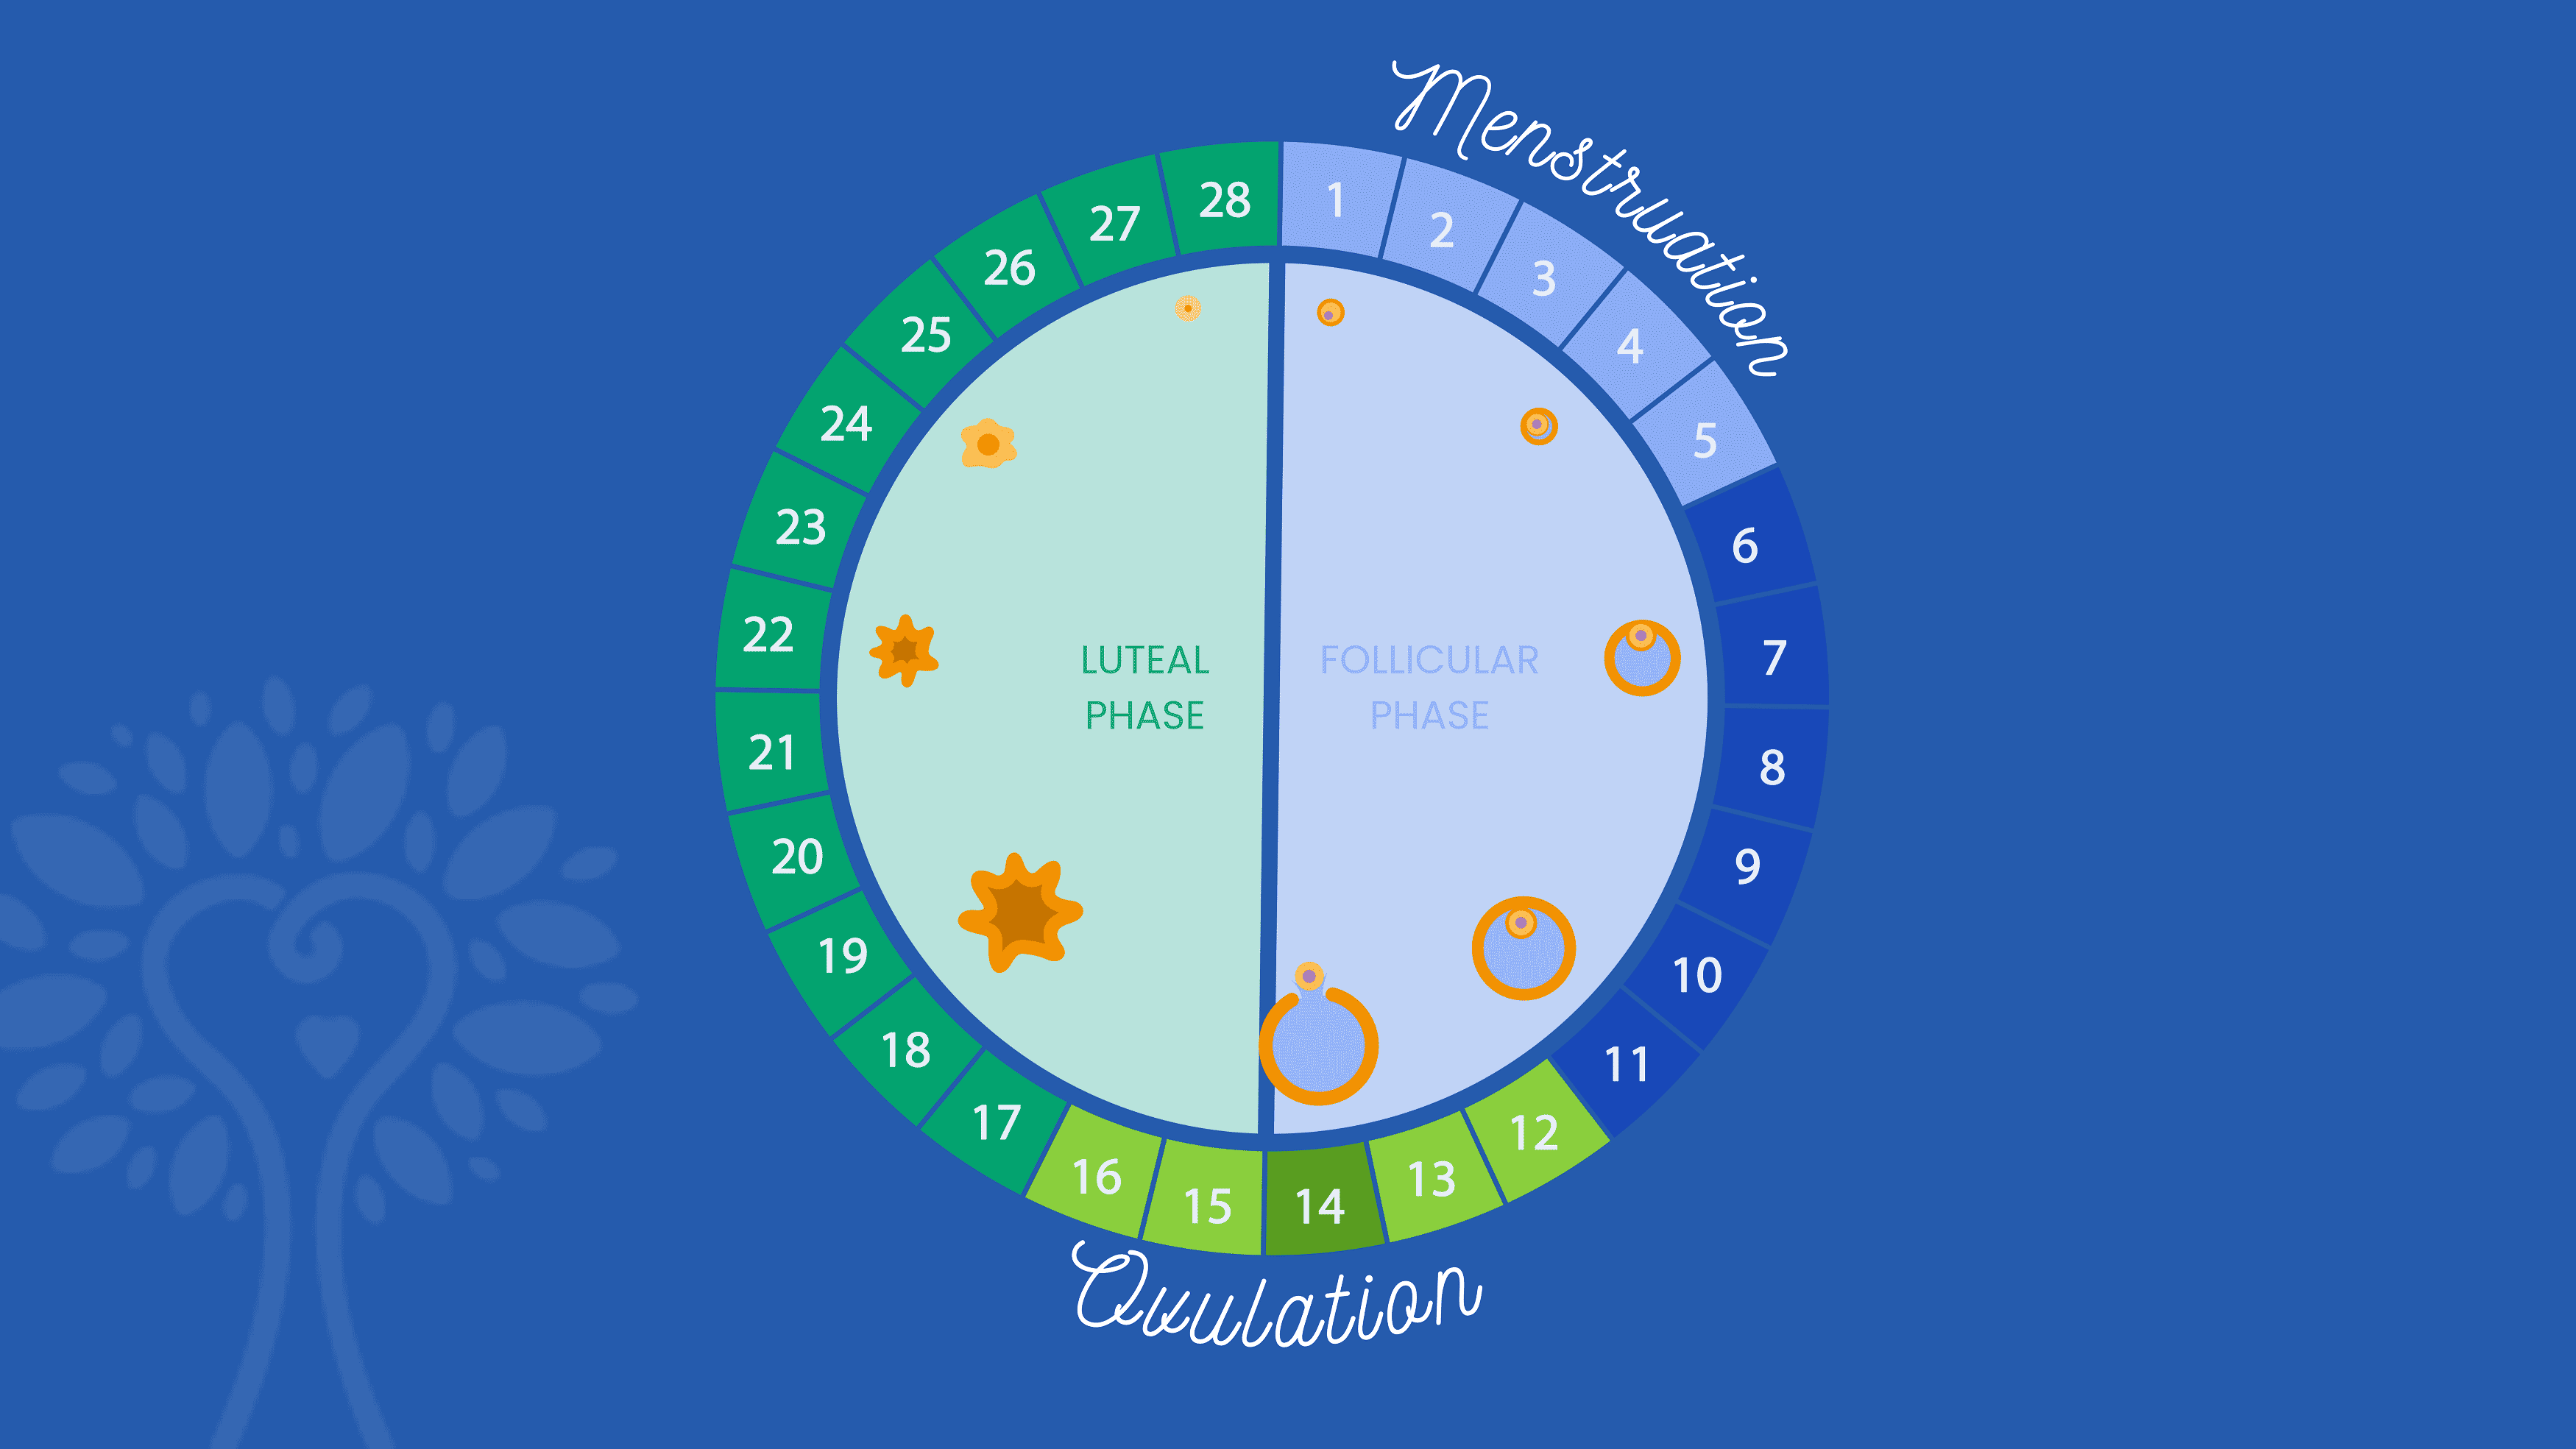 Sfondo blu scuro con calendario circolare della fecondazione in vitro che mostra i 28 giorni di un ciclo mestruale con la parola "Mestruazioni" che copre i giorni da 1 a 5 e la parola "Ovulazione" che copre i giorni da 12 a 16. I numeri sono colorati in diverse tonalità di blu e verde a seconda la loro fase.